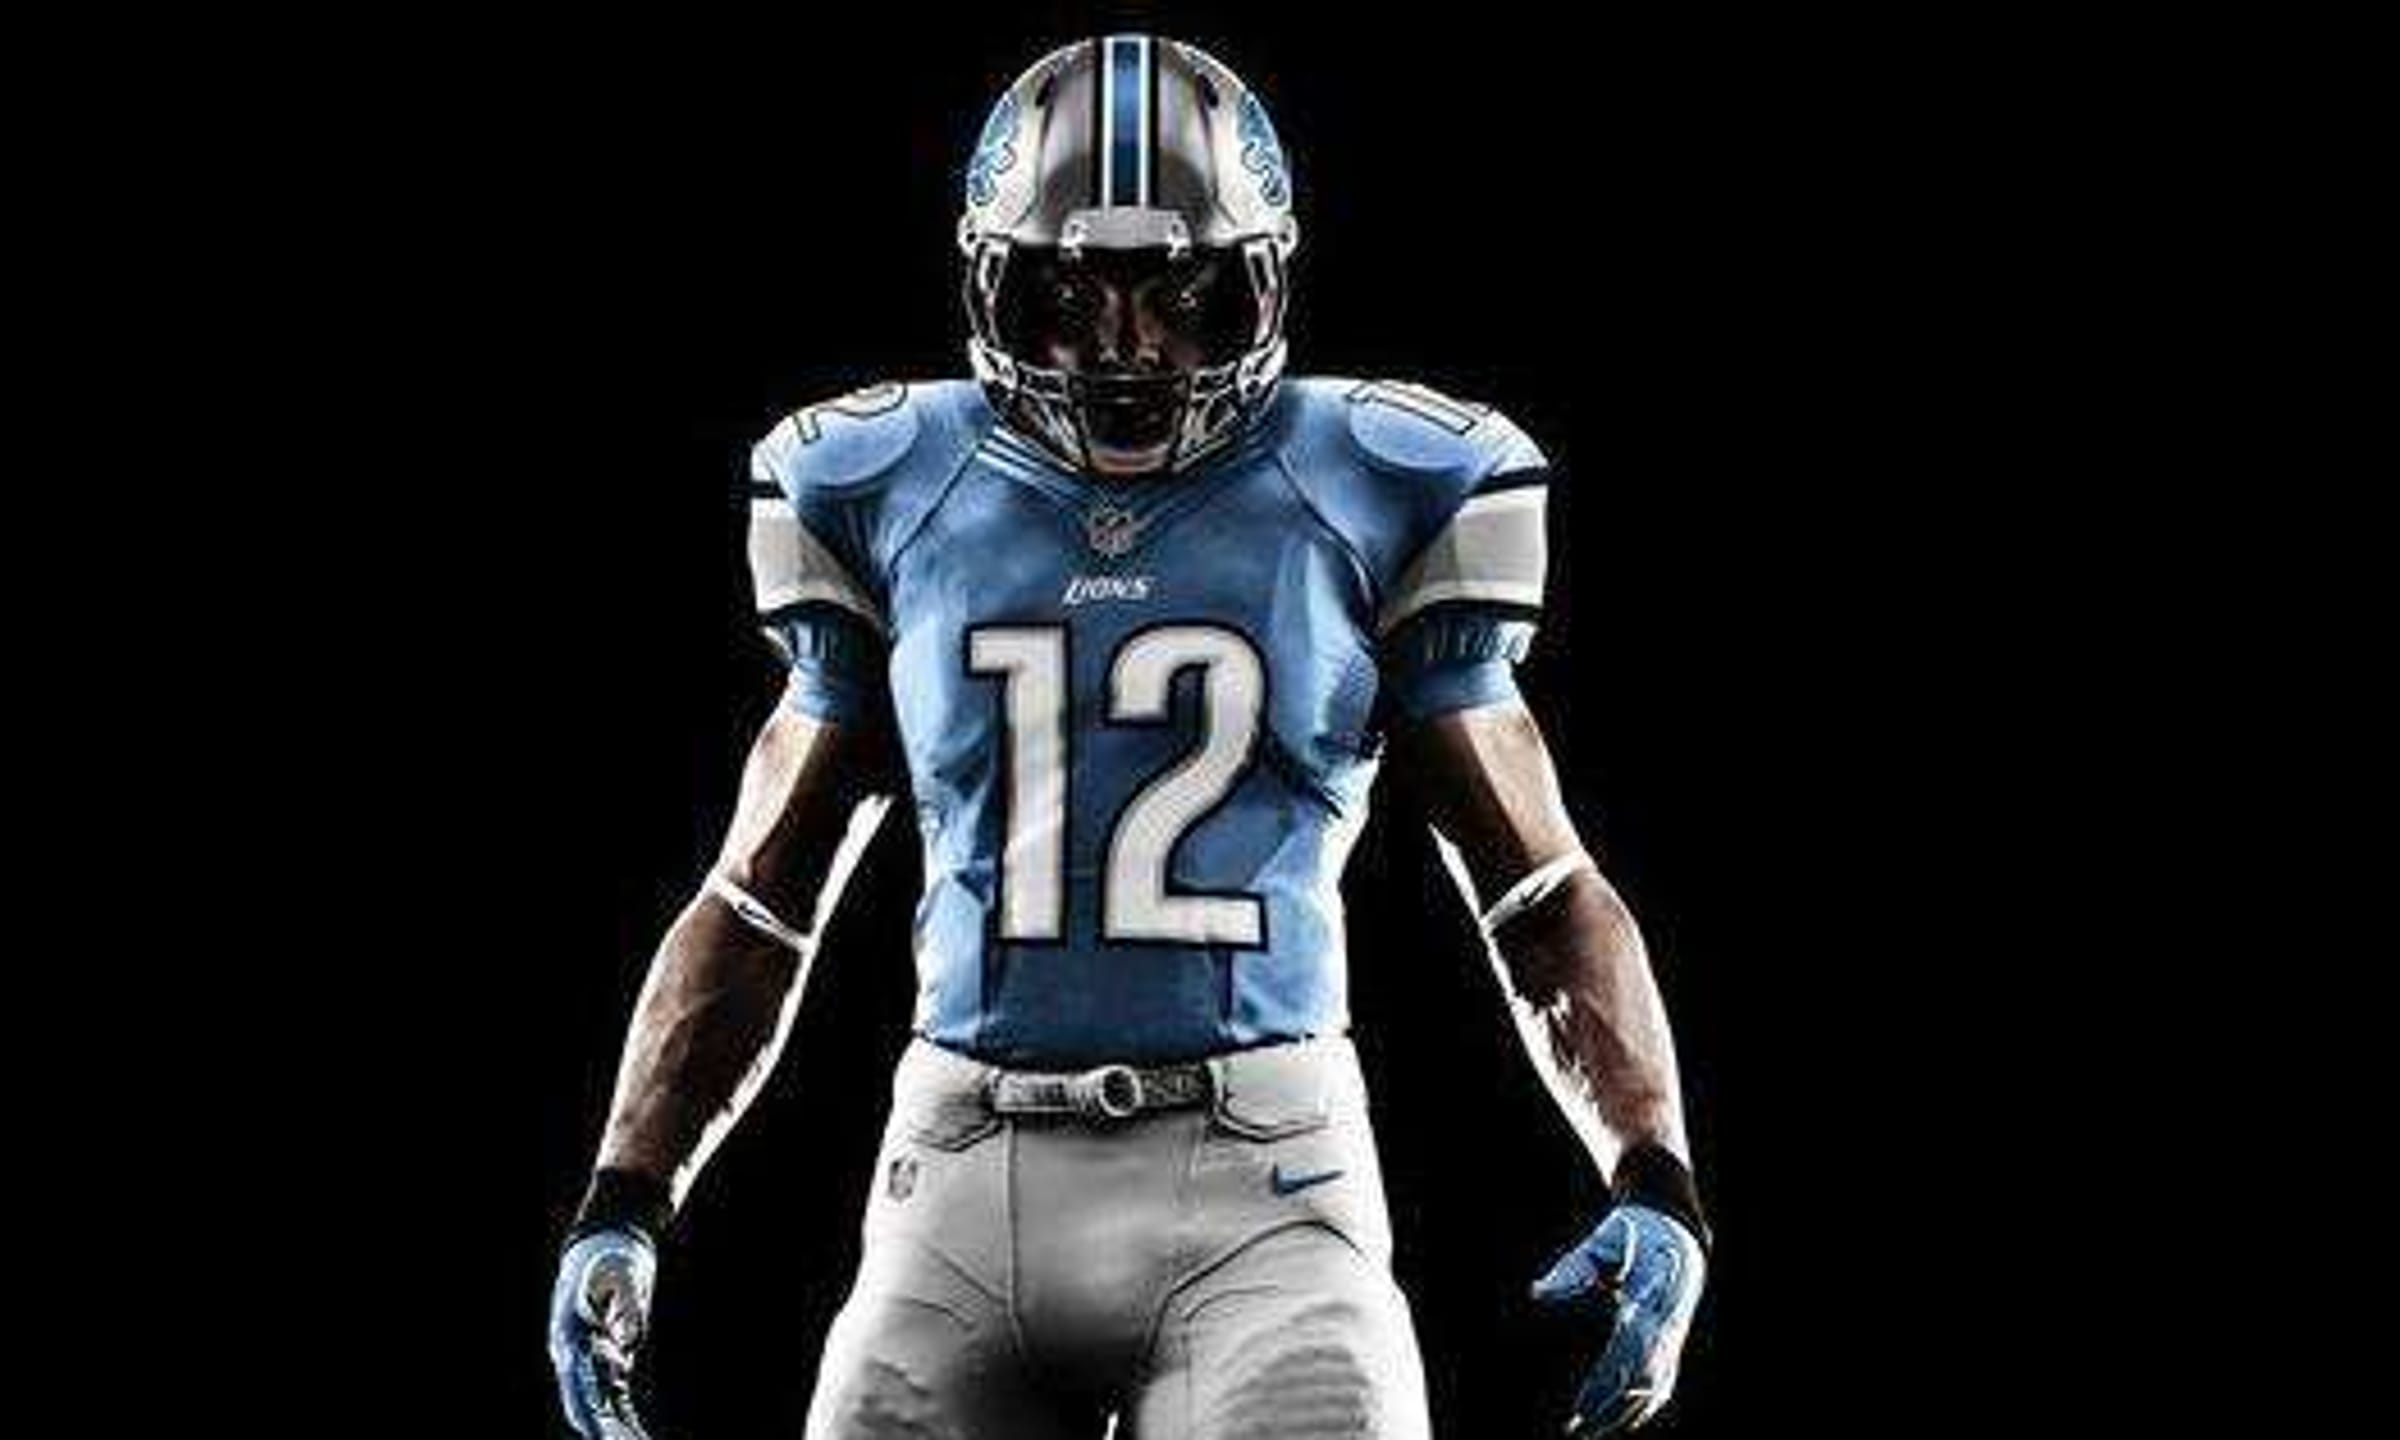 Top 7 Coolest NFL Uniforms